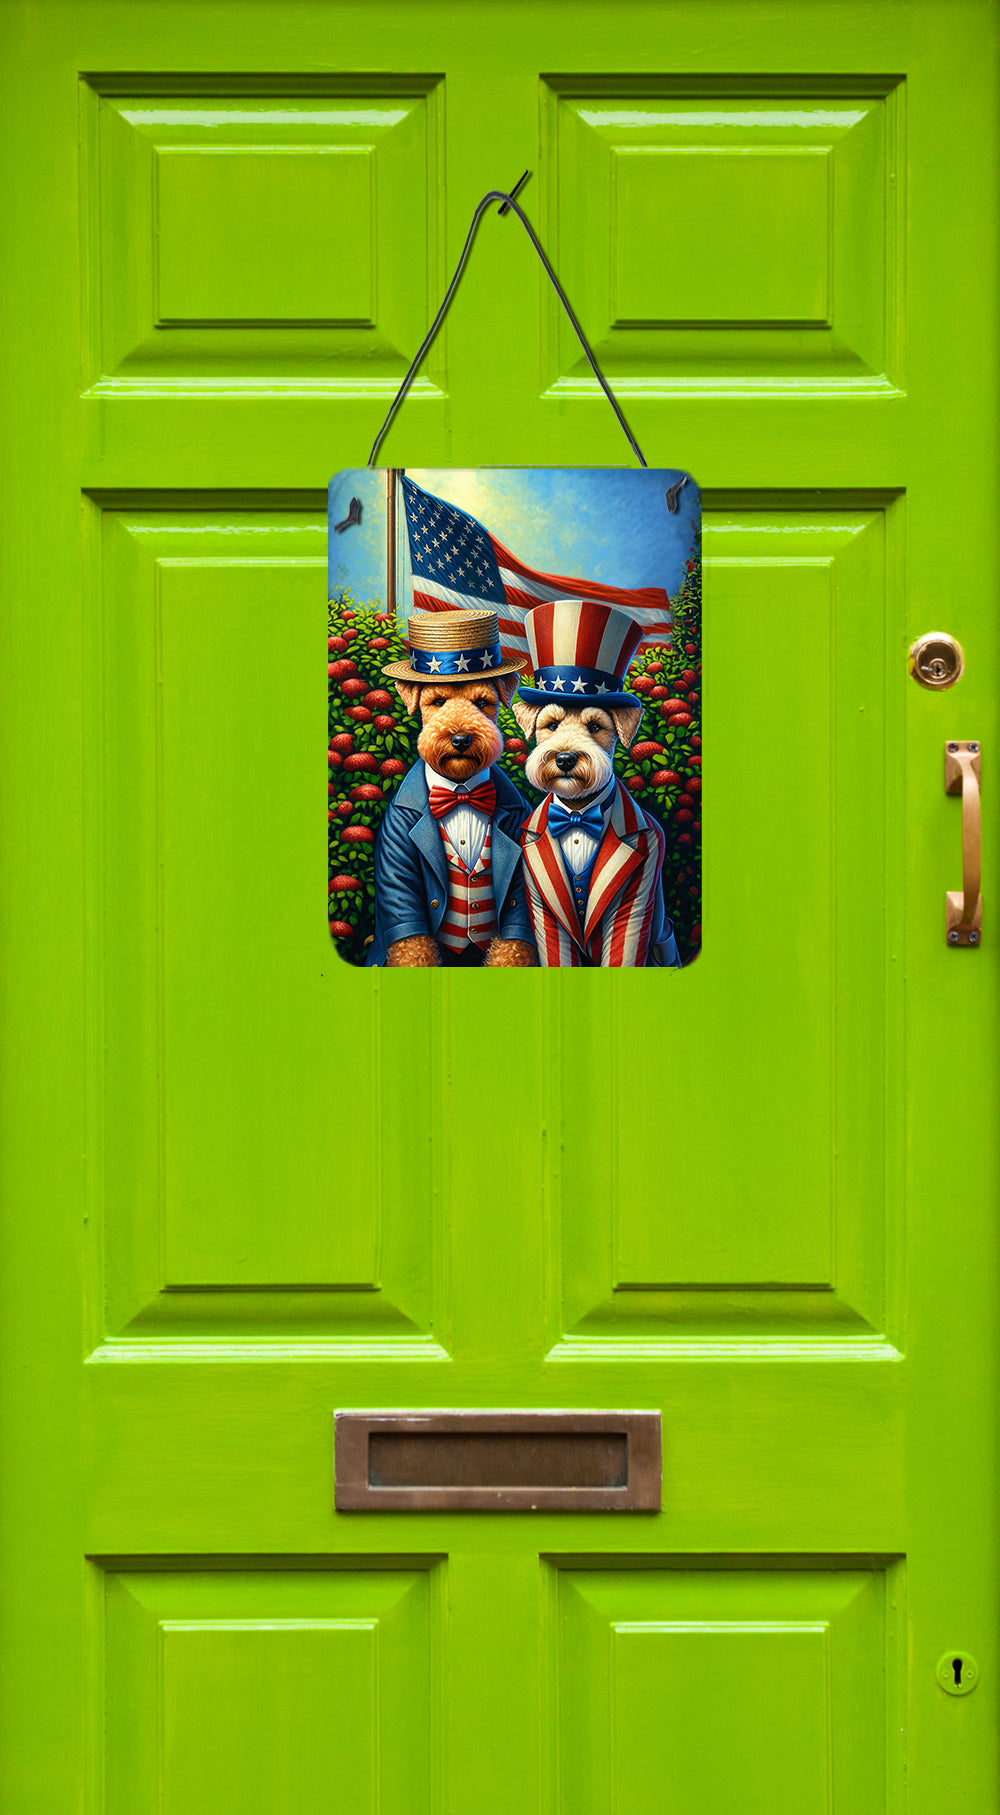 Buy this All American Lakeland Terrier Wall or Door Hanging Prints